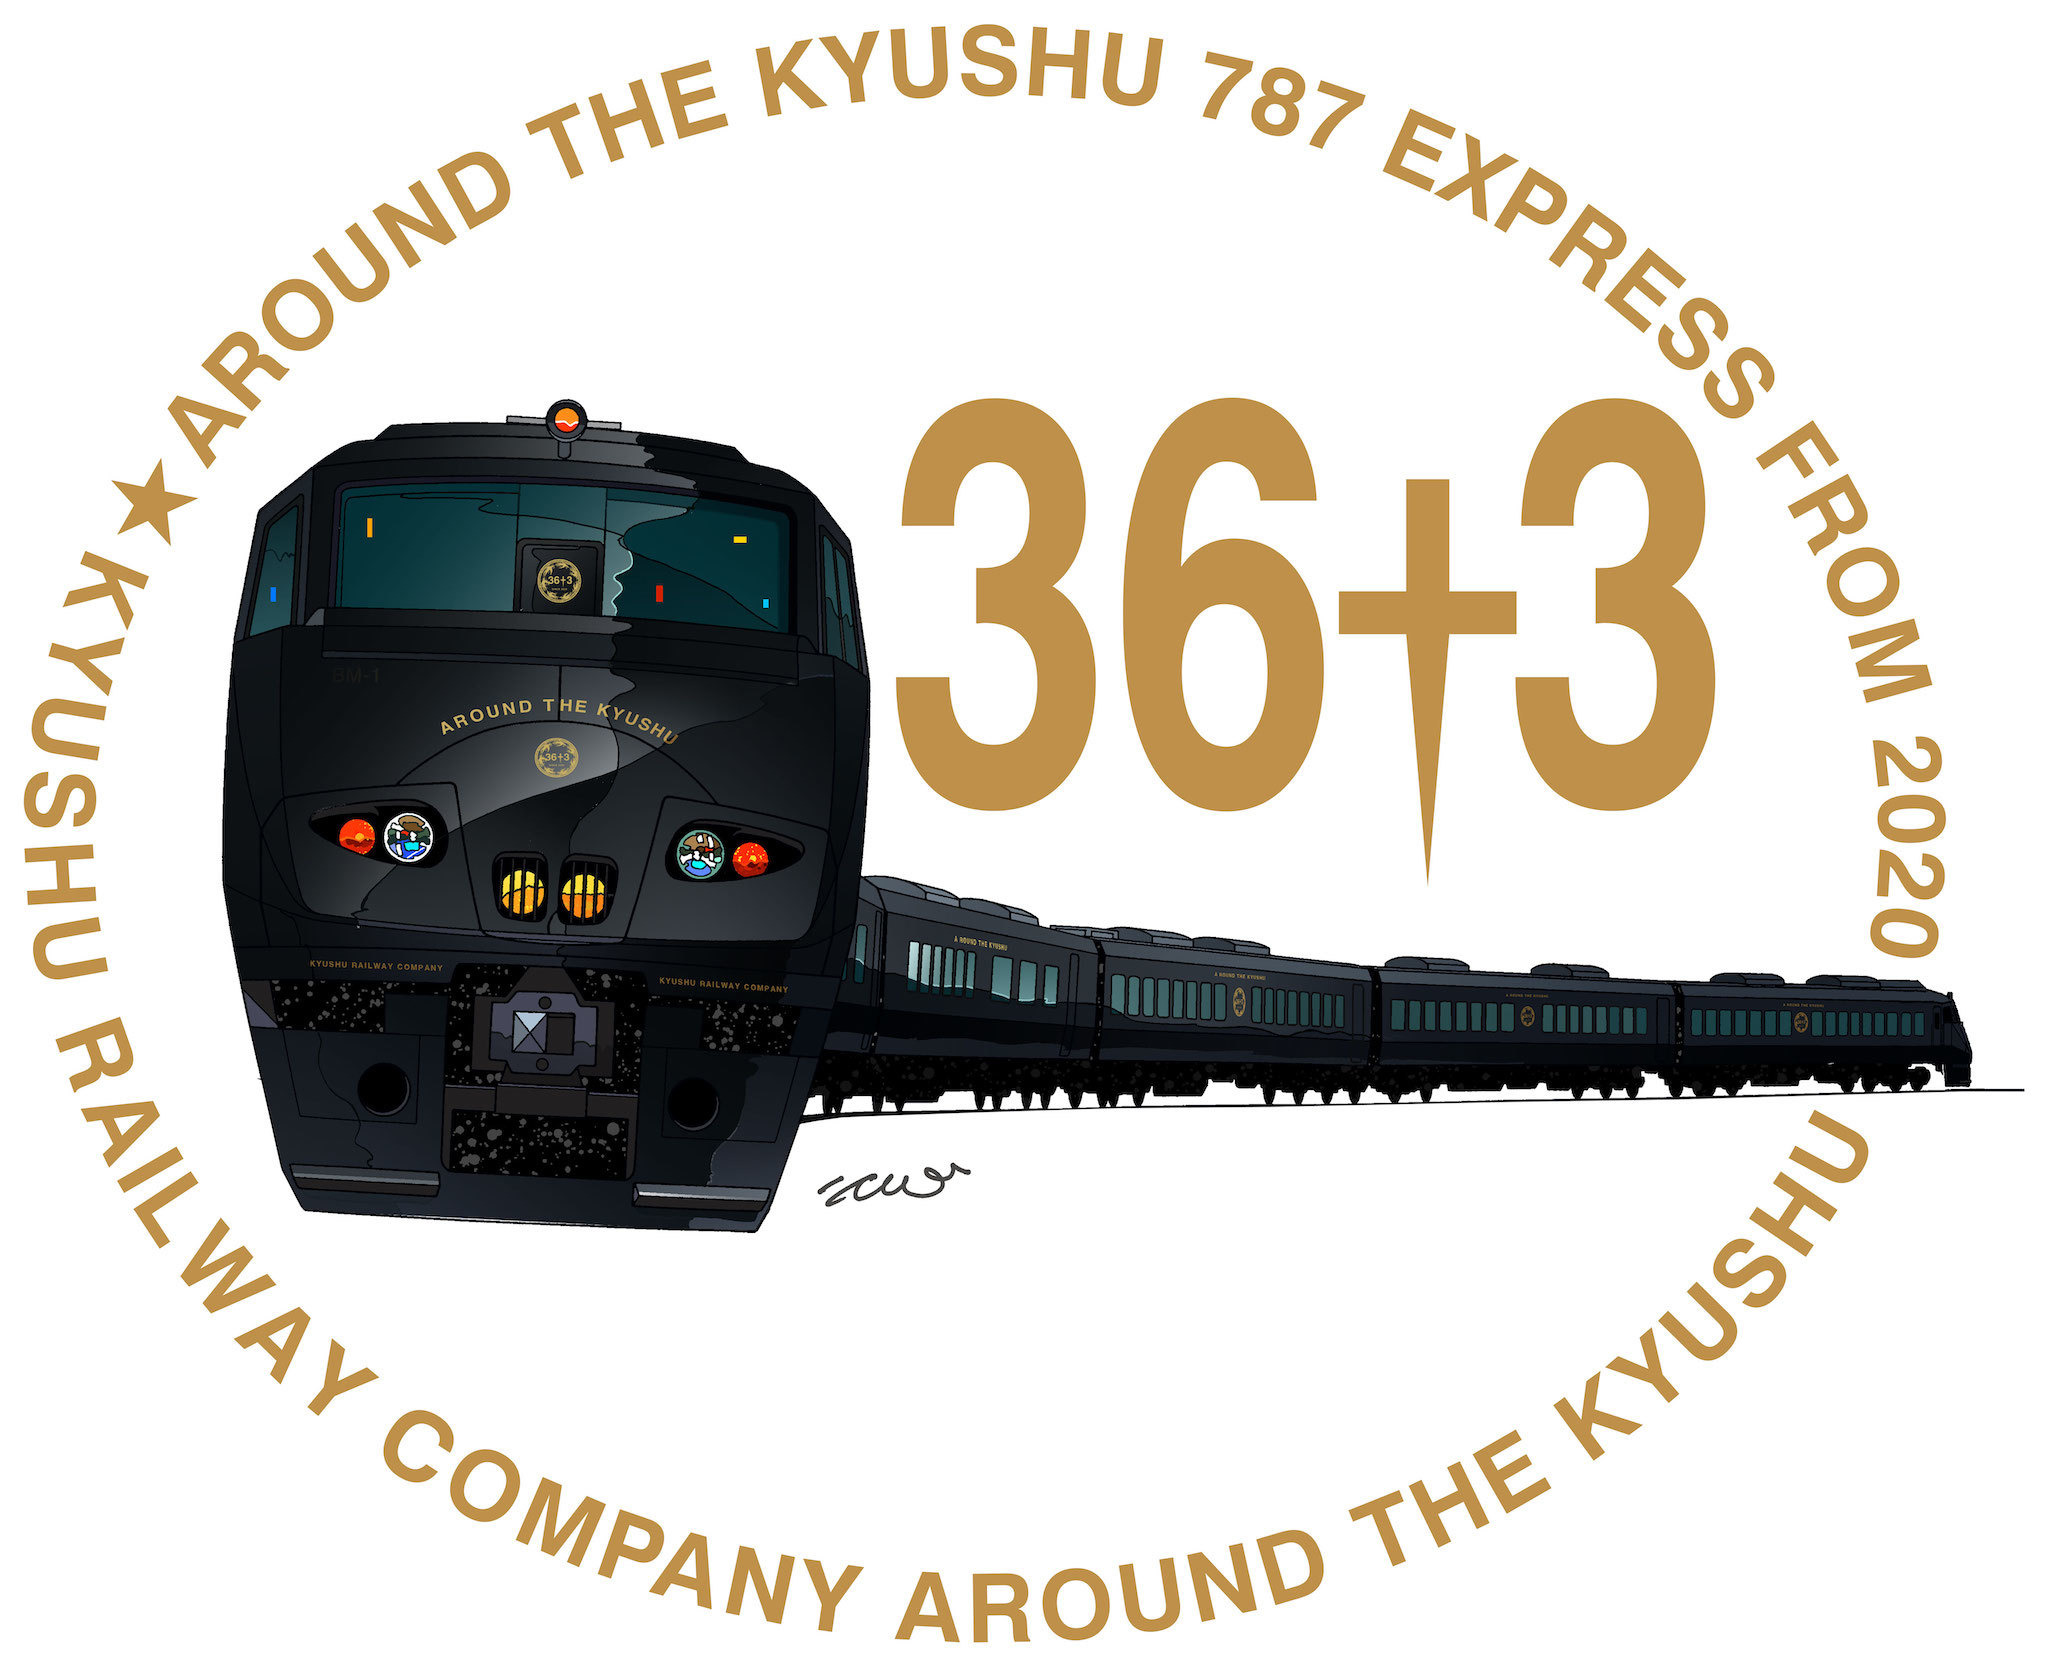 九州全県を巡る黒い車体…JR九州が電車初の観光列車 2020年秋から運行へ 